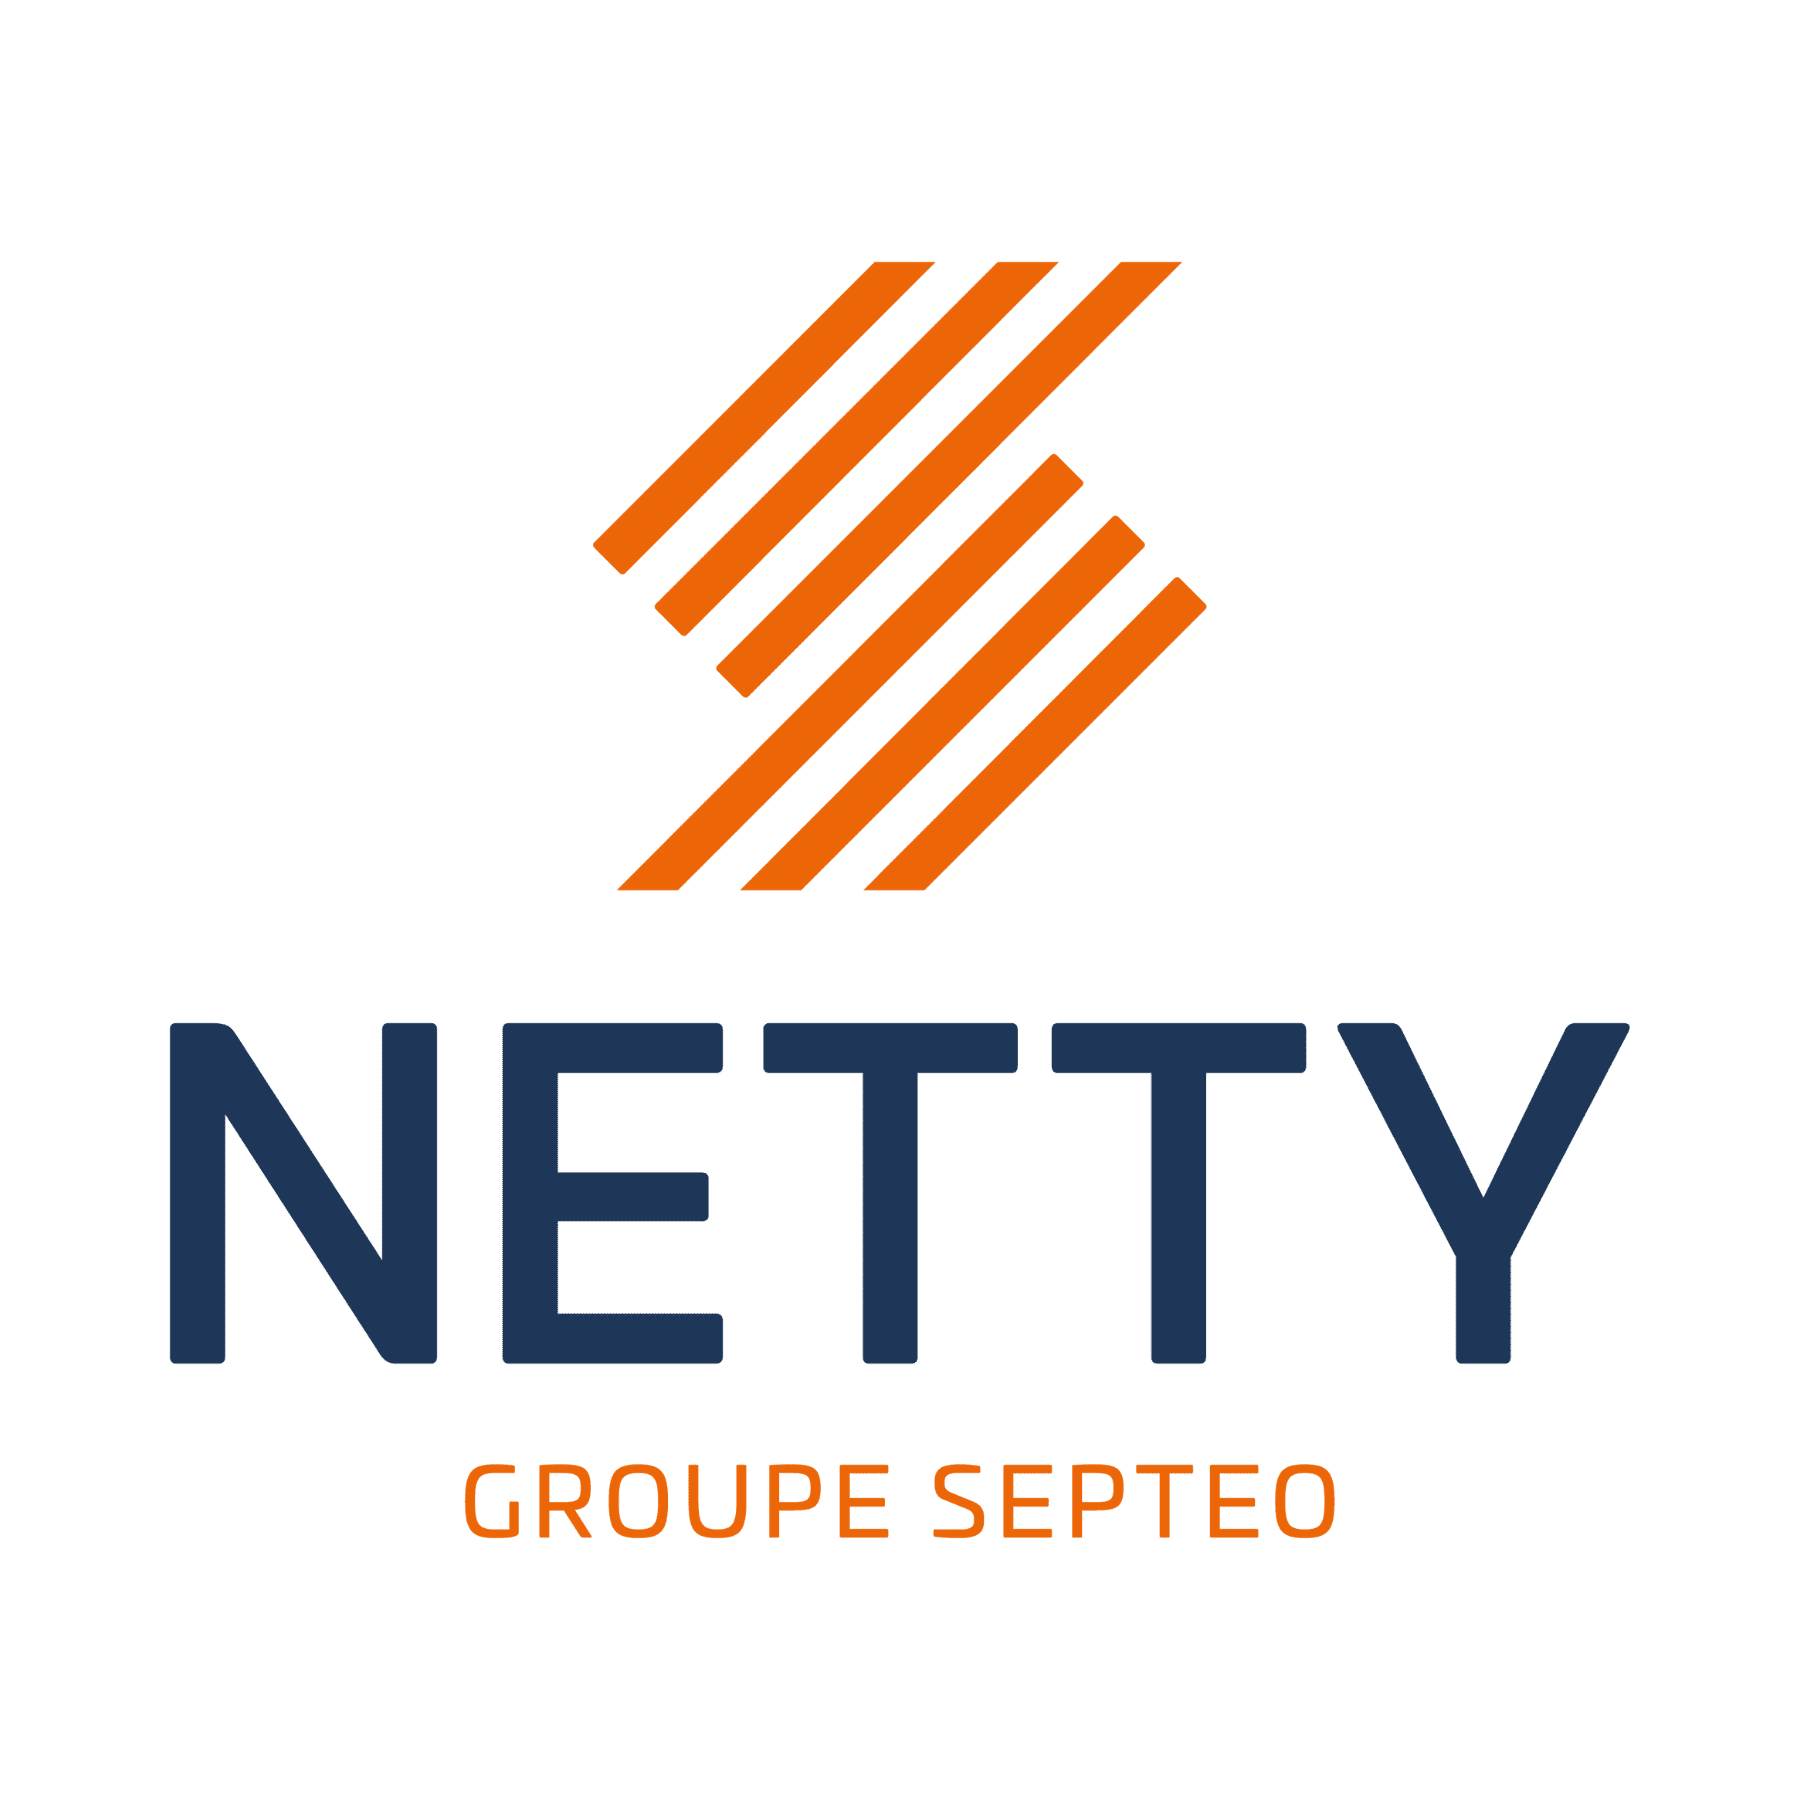 Logo Netty